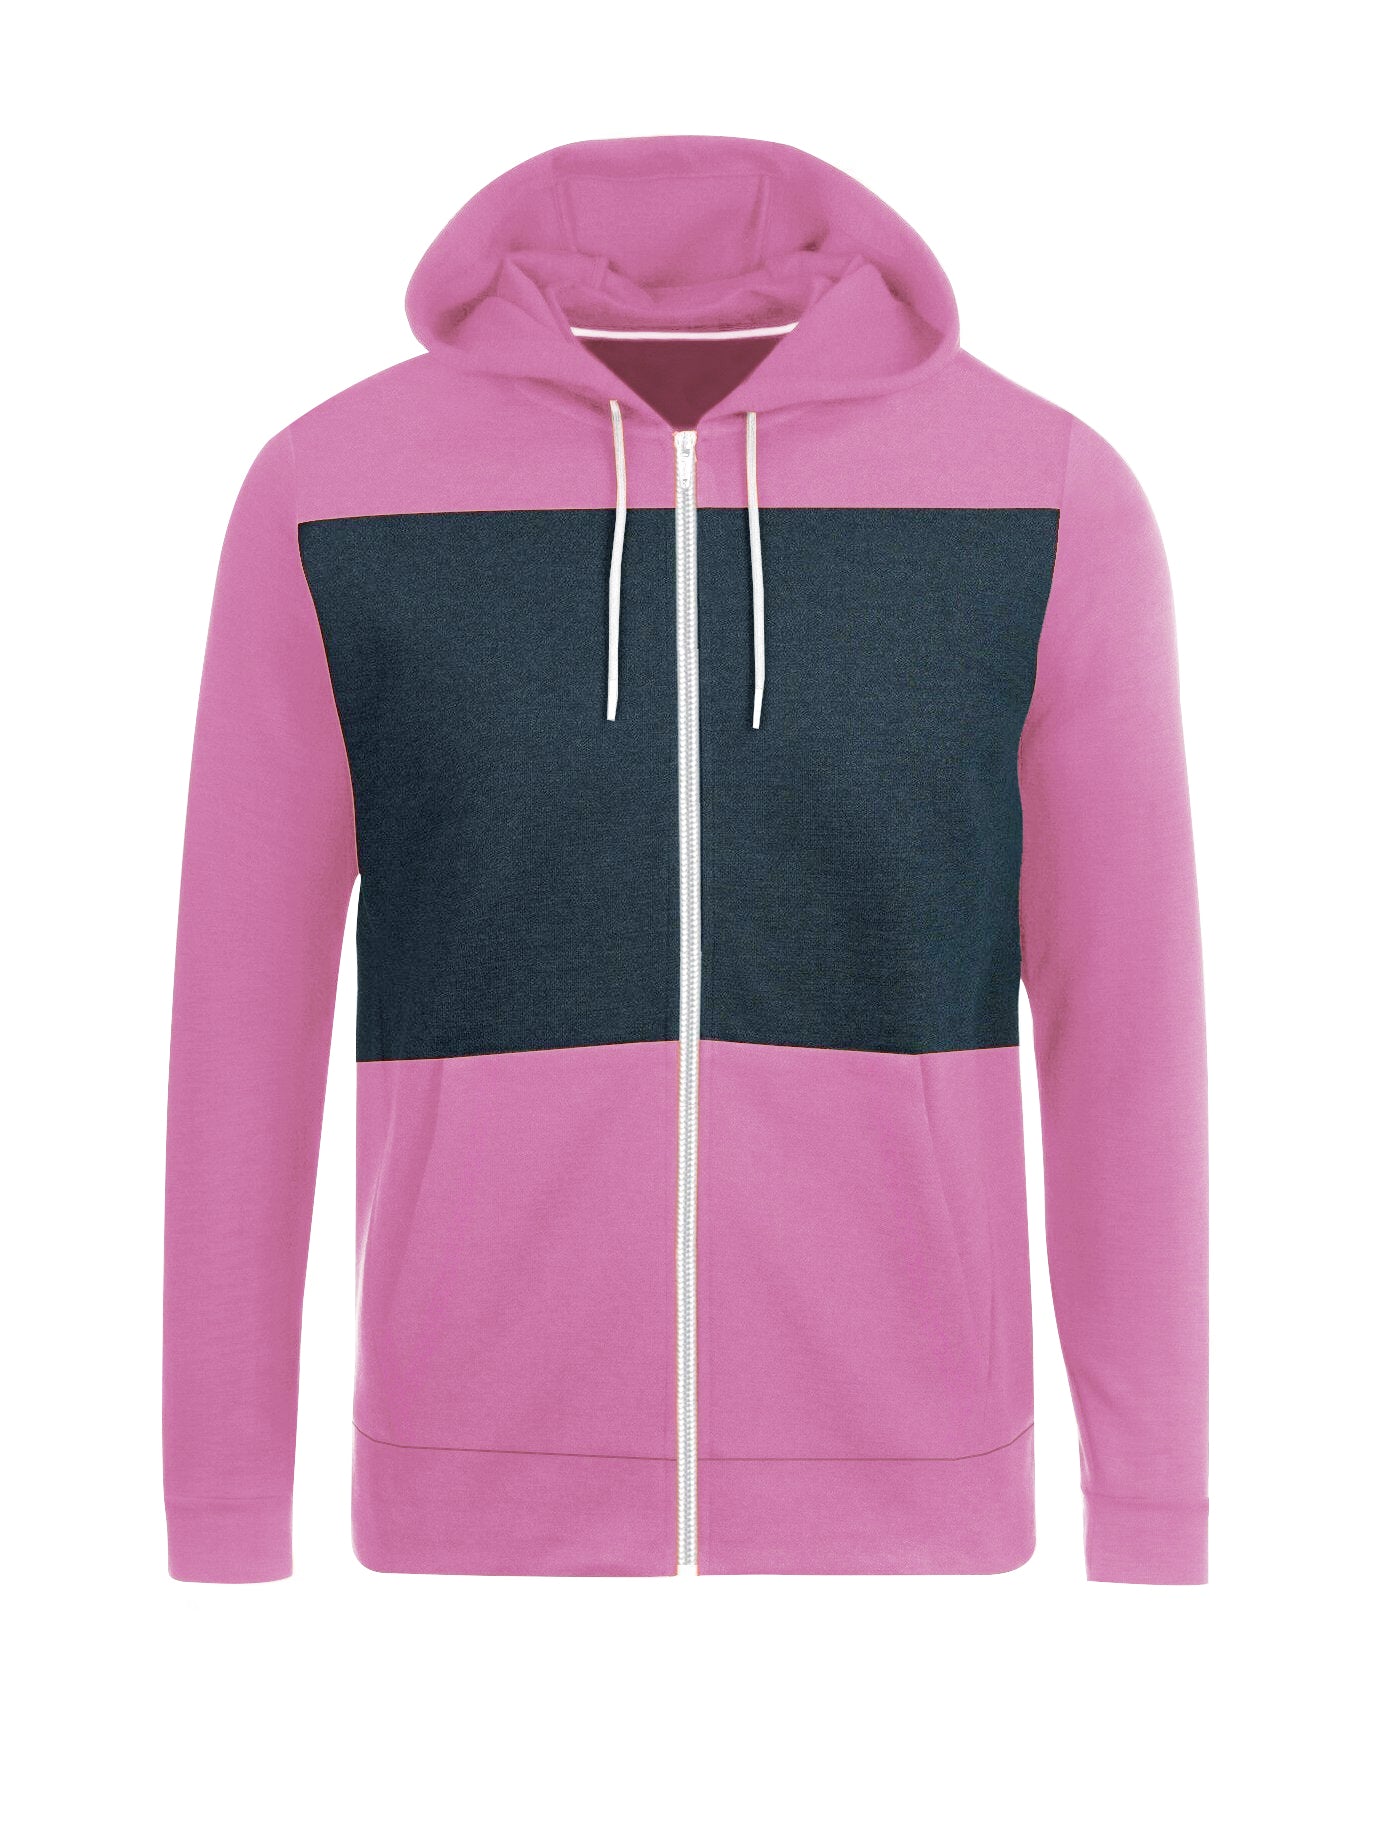 Next Fleece Zipper Hoodie For Men-Pink with Navy Panel-SP504